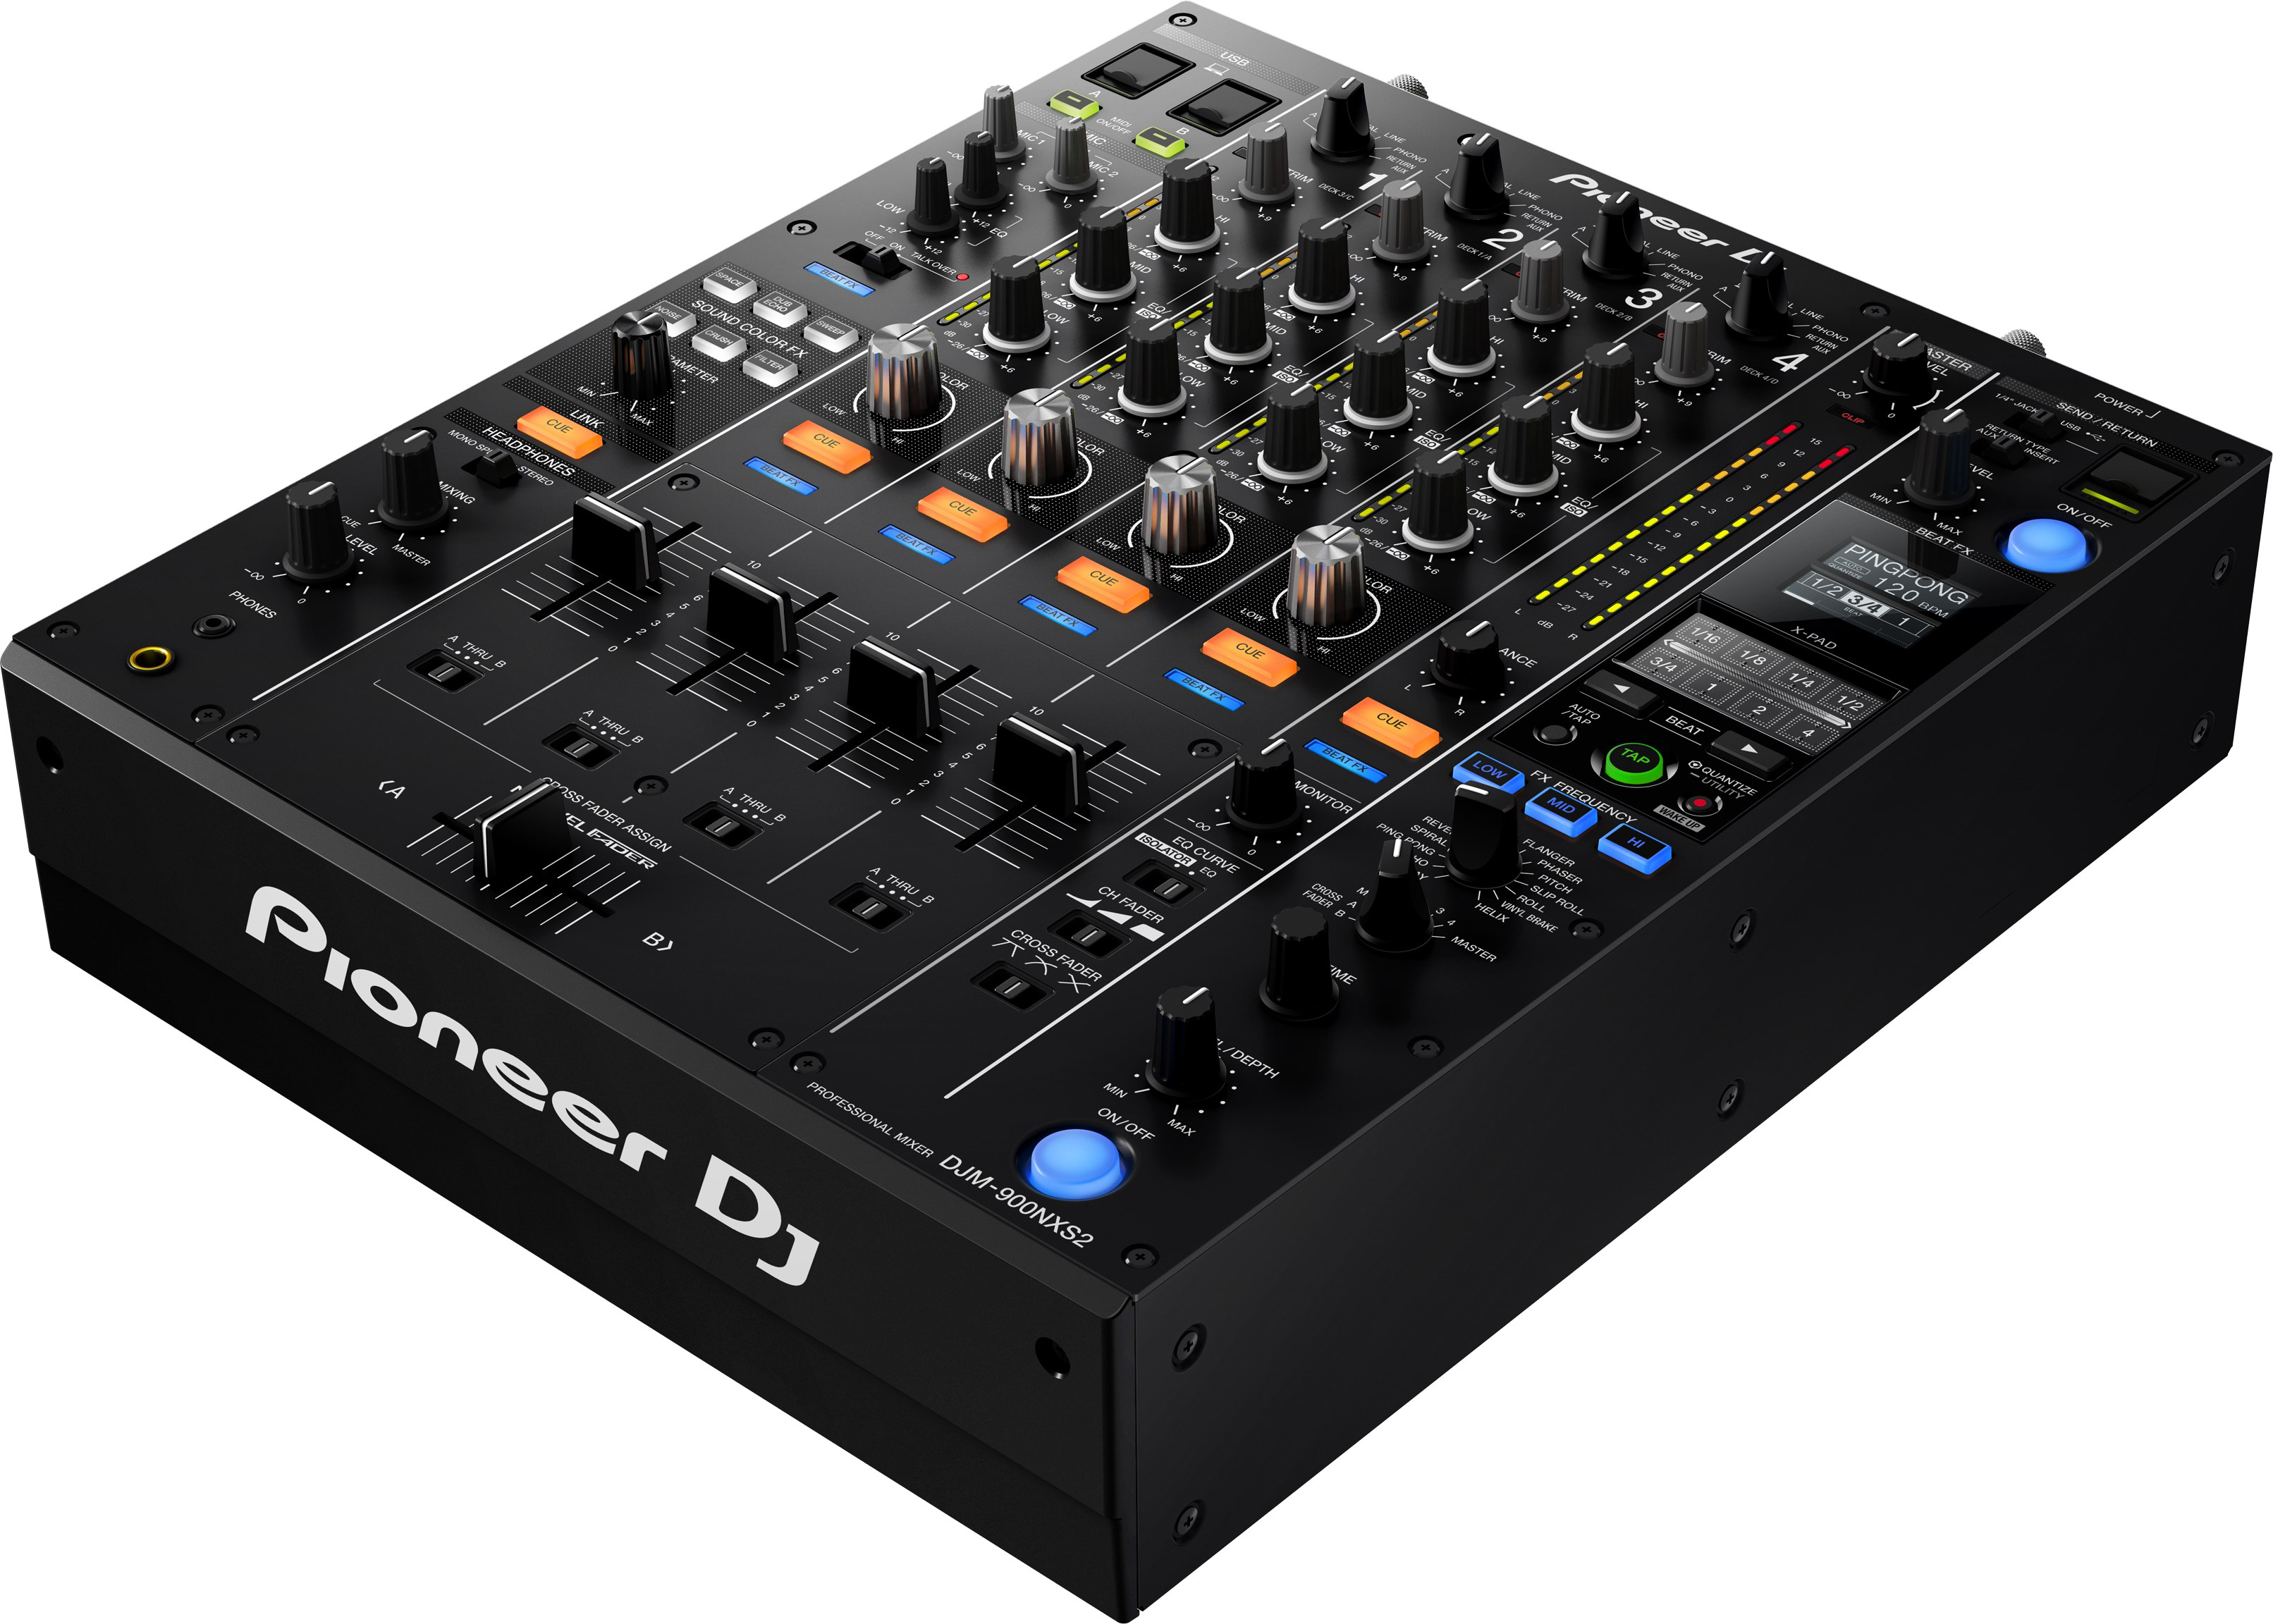 Pioneer DJM-900NXS2 4-Channel Digital Pro-DJ Mixer 841300100249 | eBay